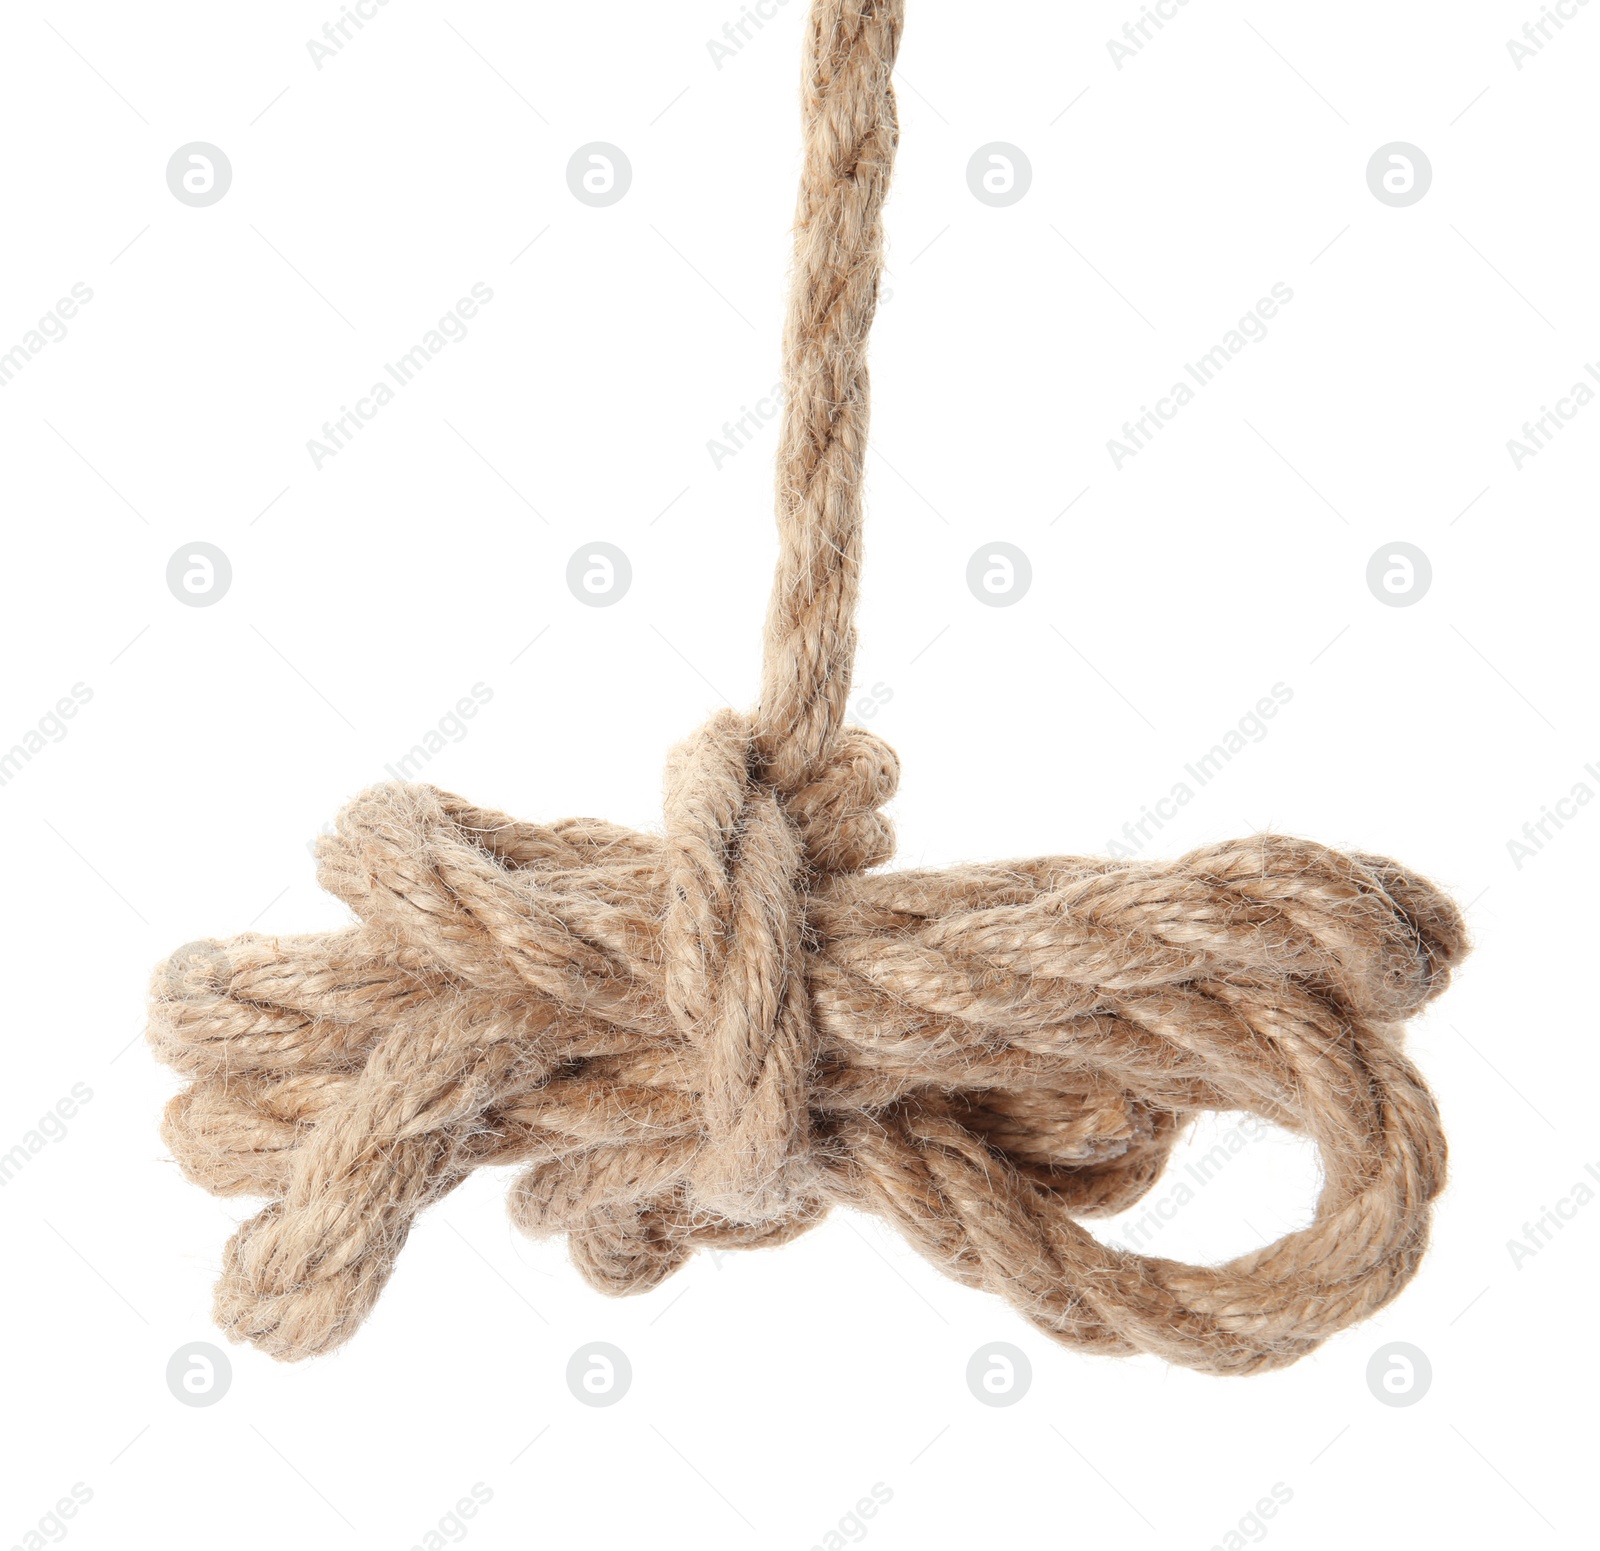 Photo of Bundle of hemp rope on white background